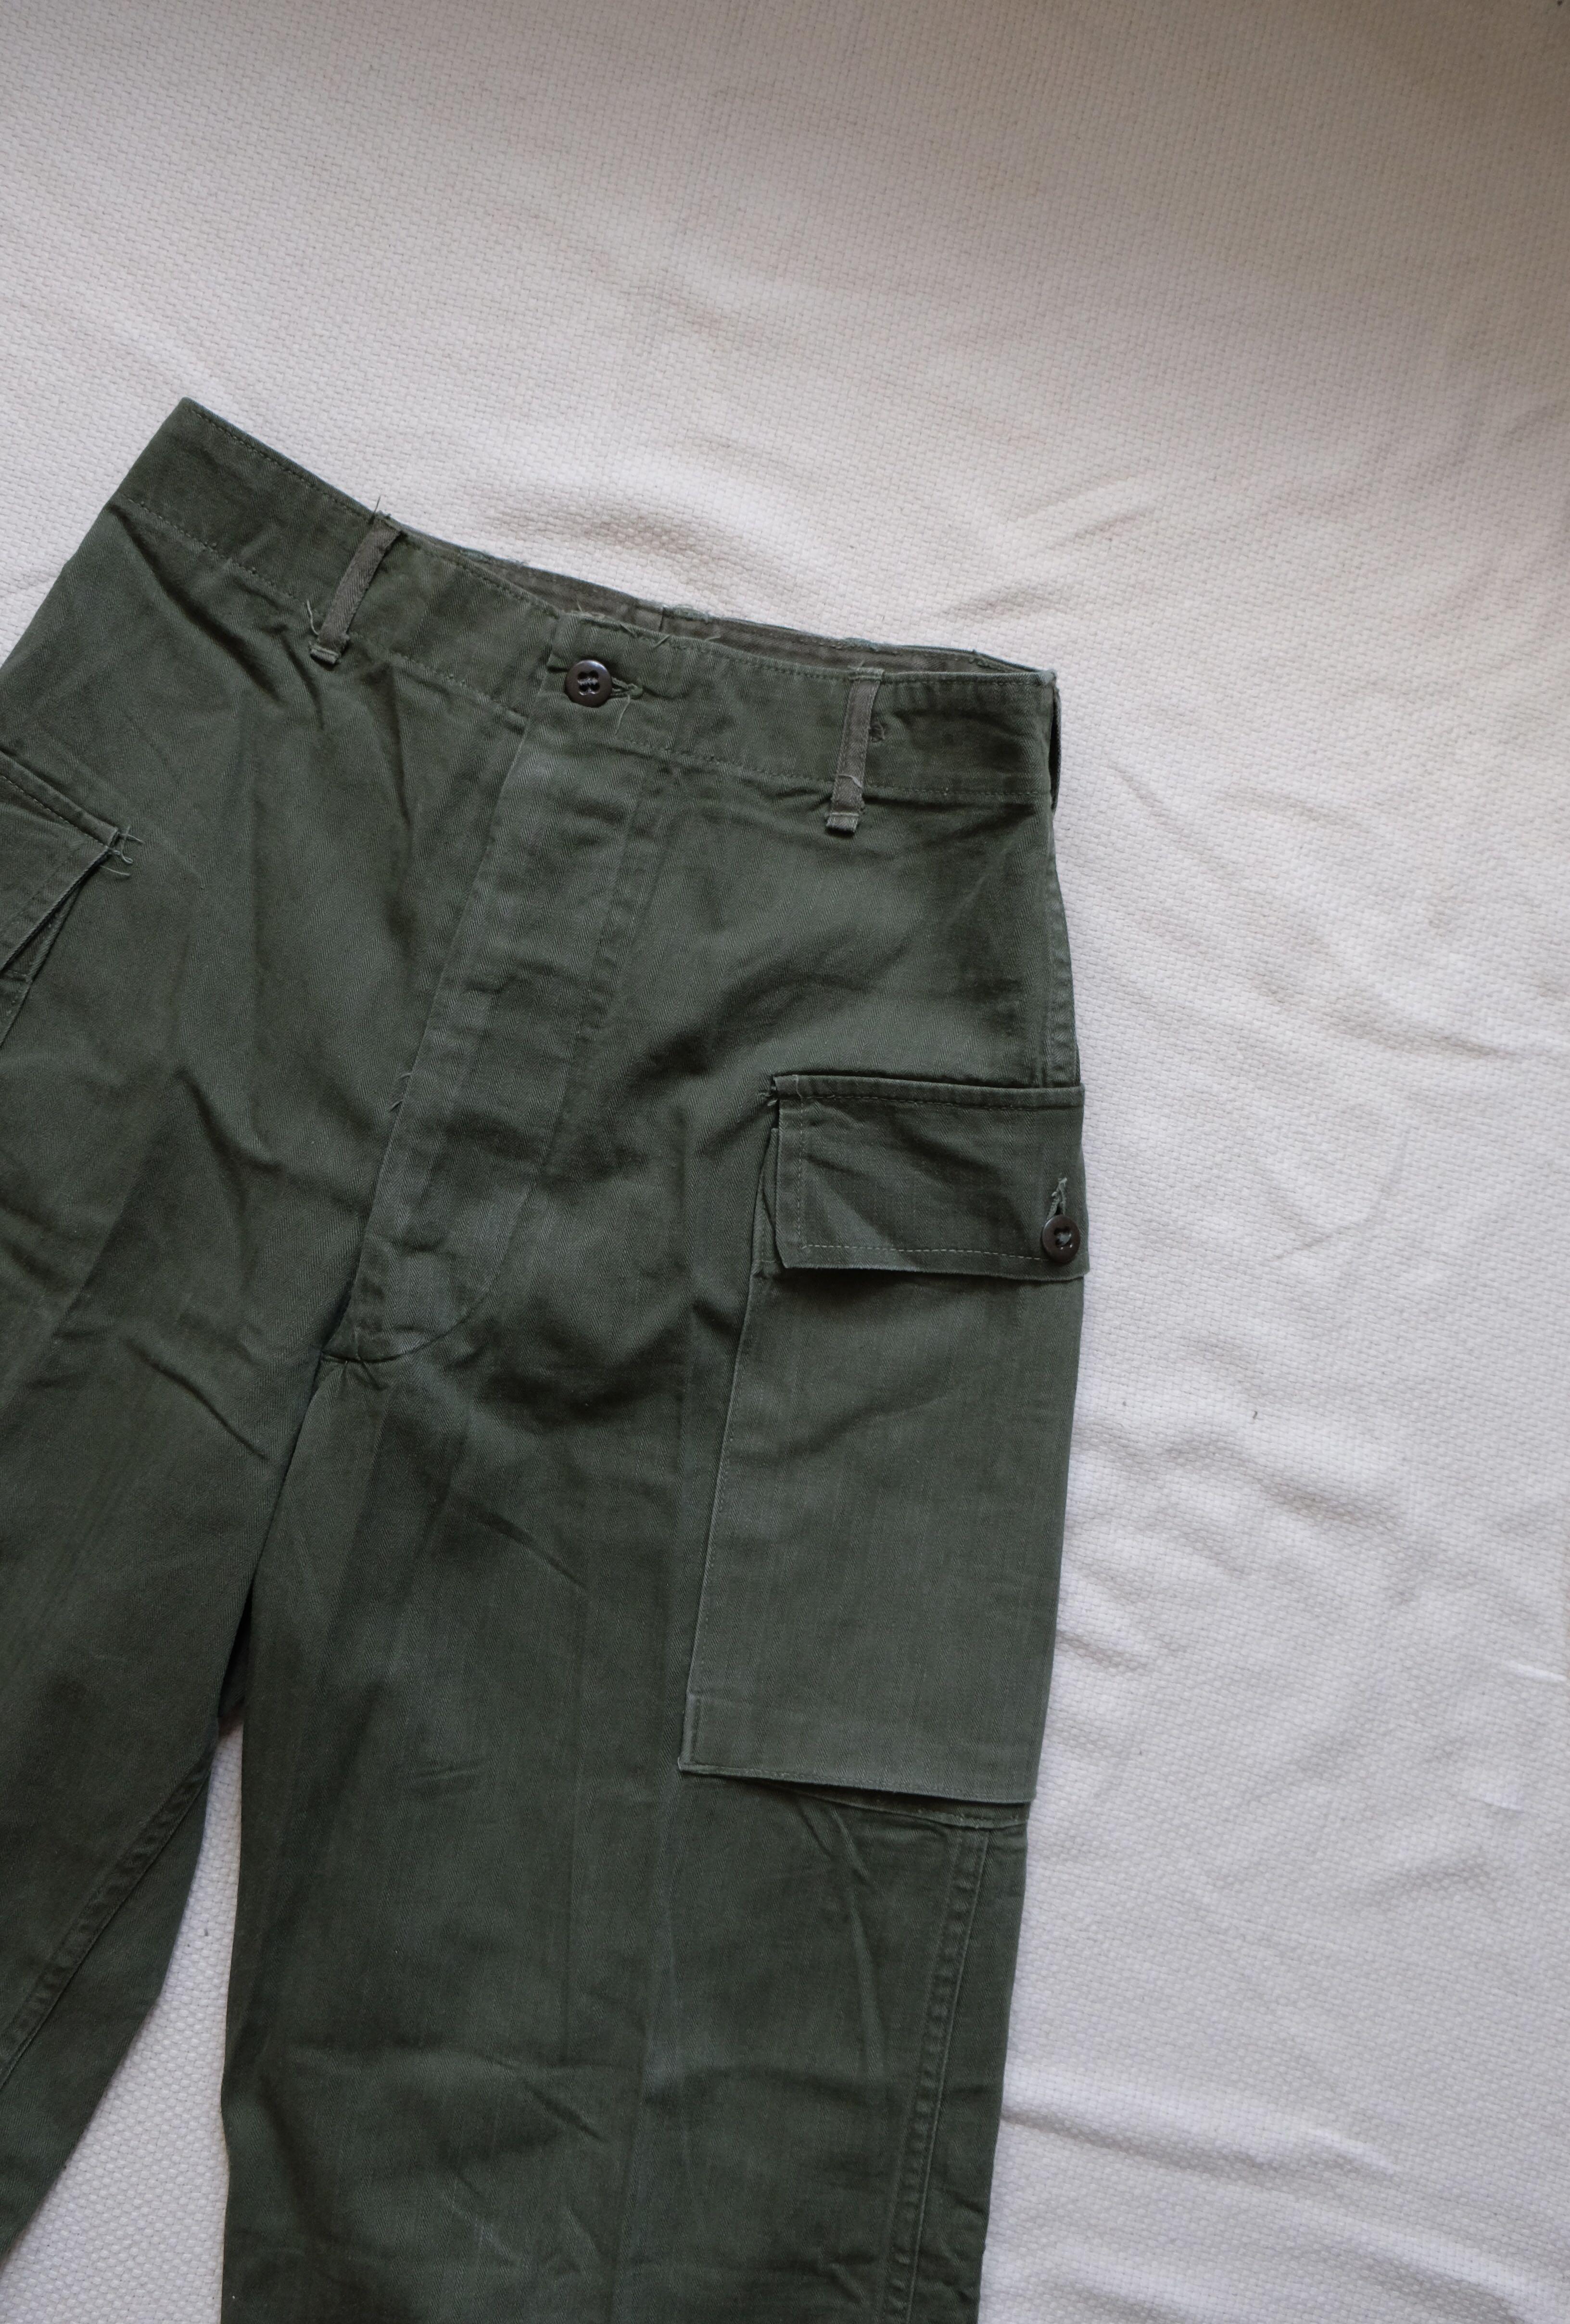 10206円 公式ストア 40s U.S.ARMY vintage military pants